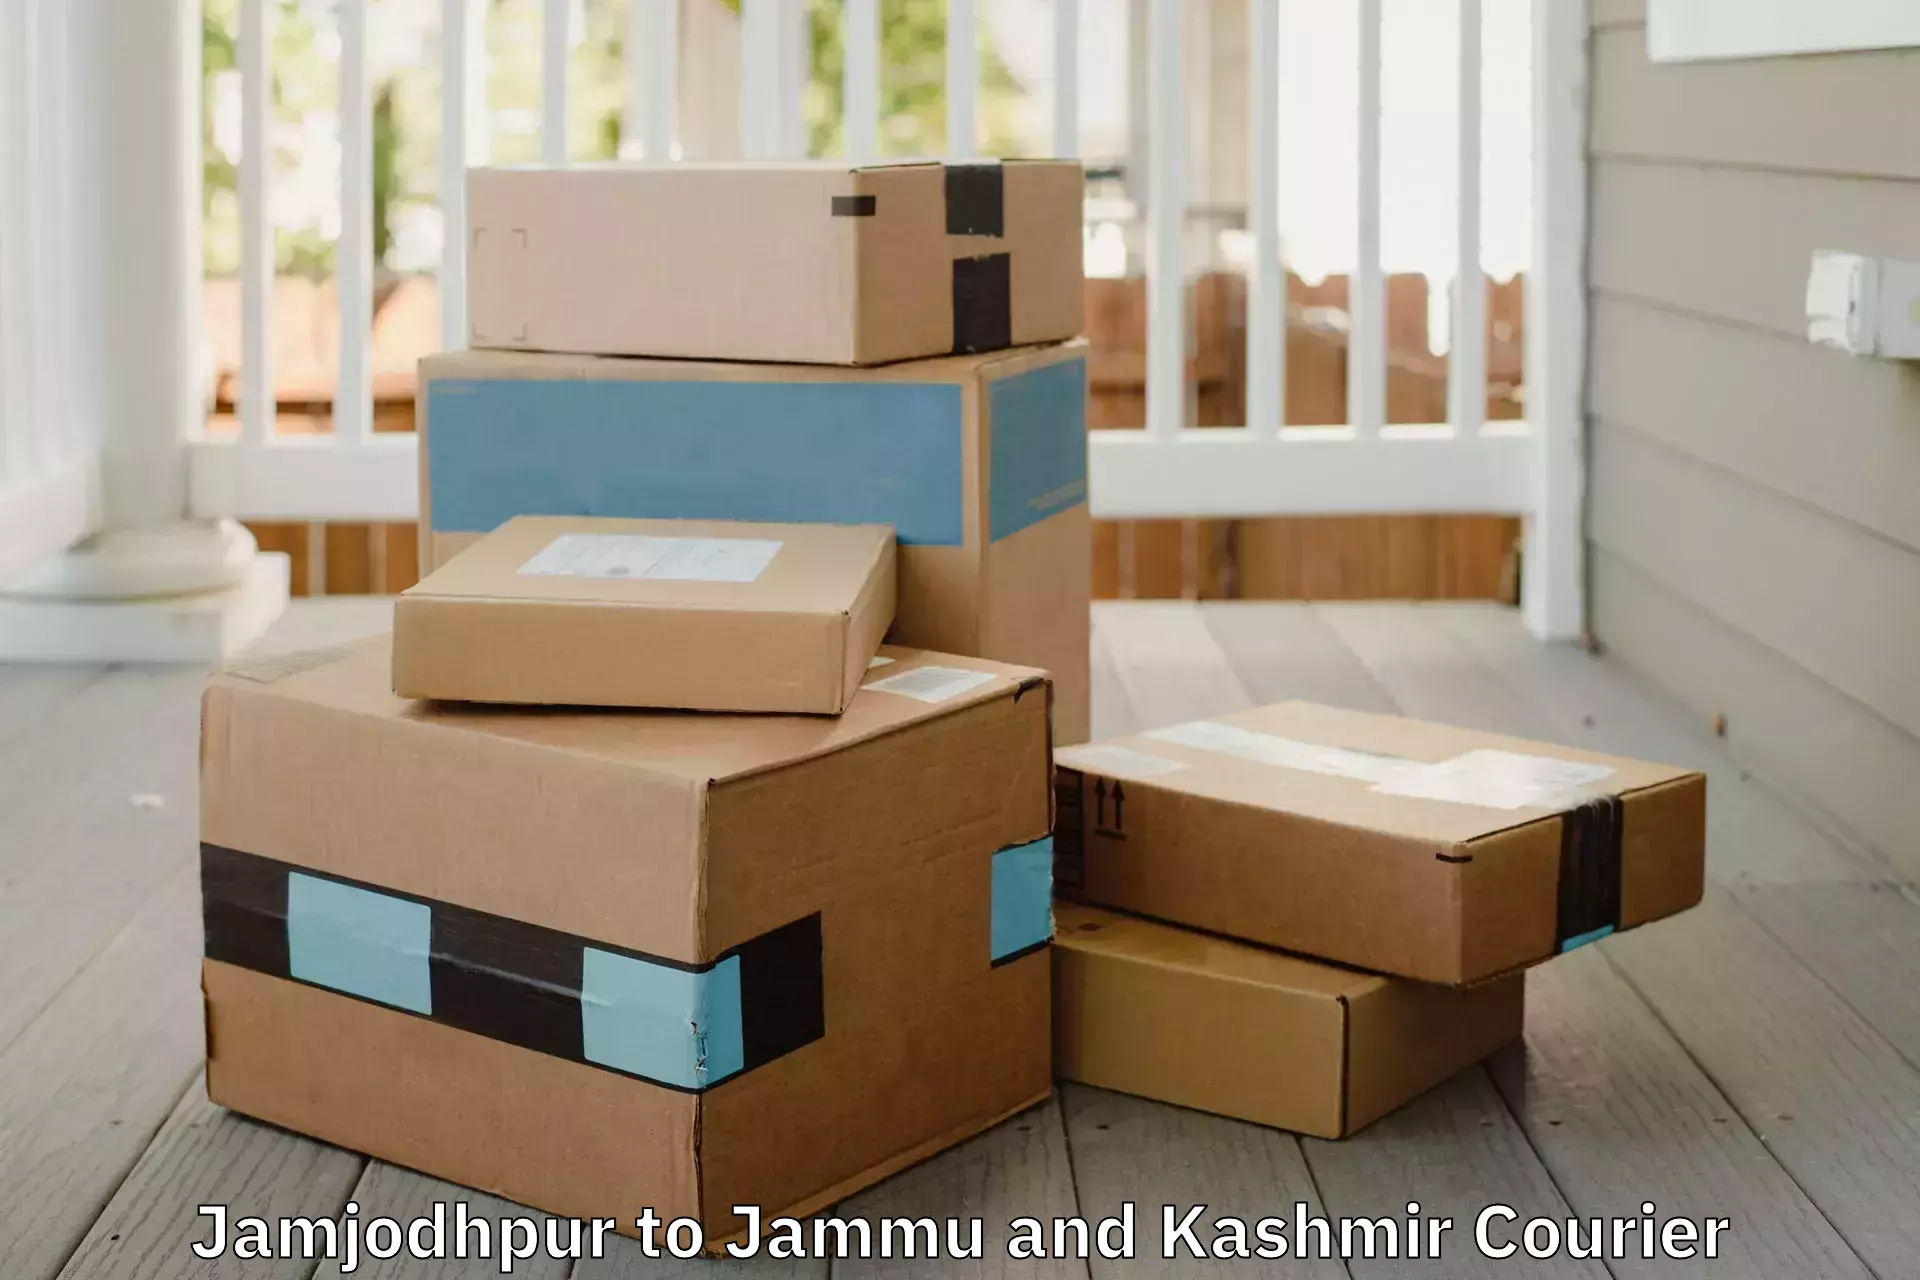 Home goods moving Jamjodhpur to Rajouri